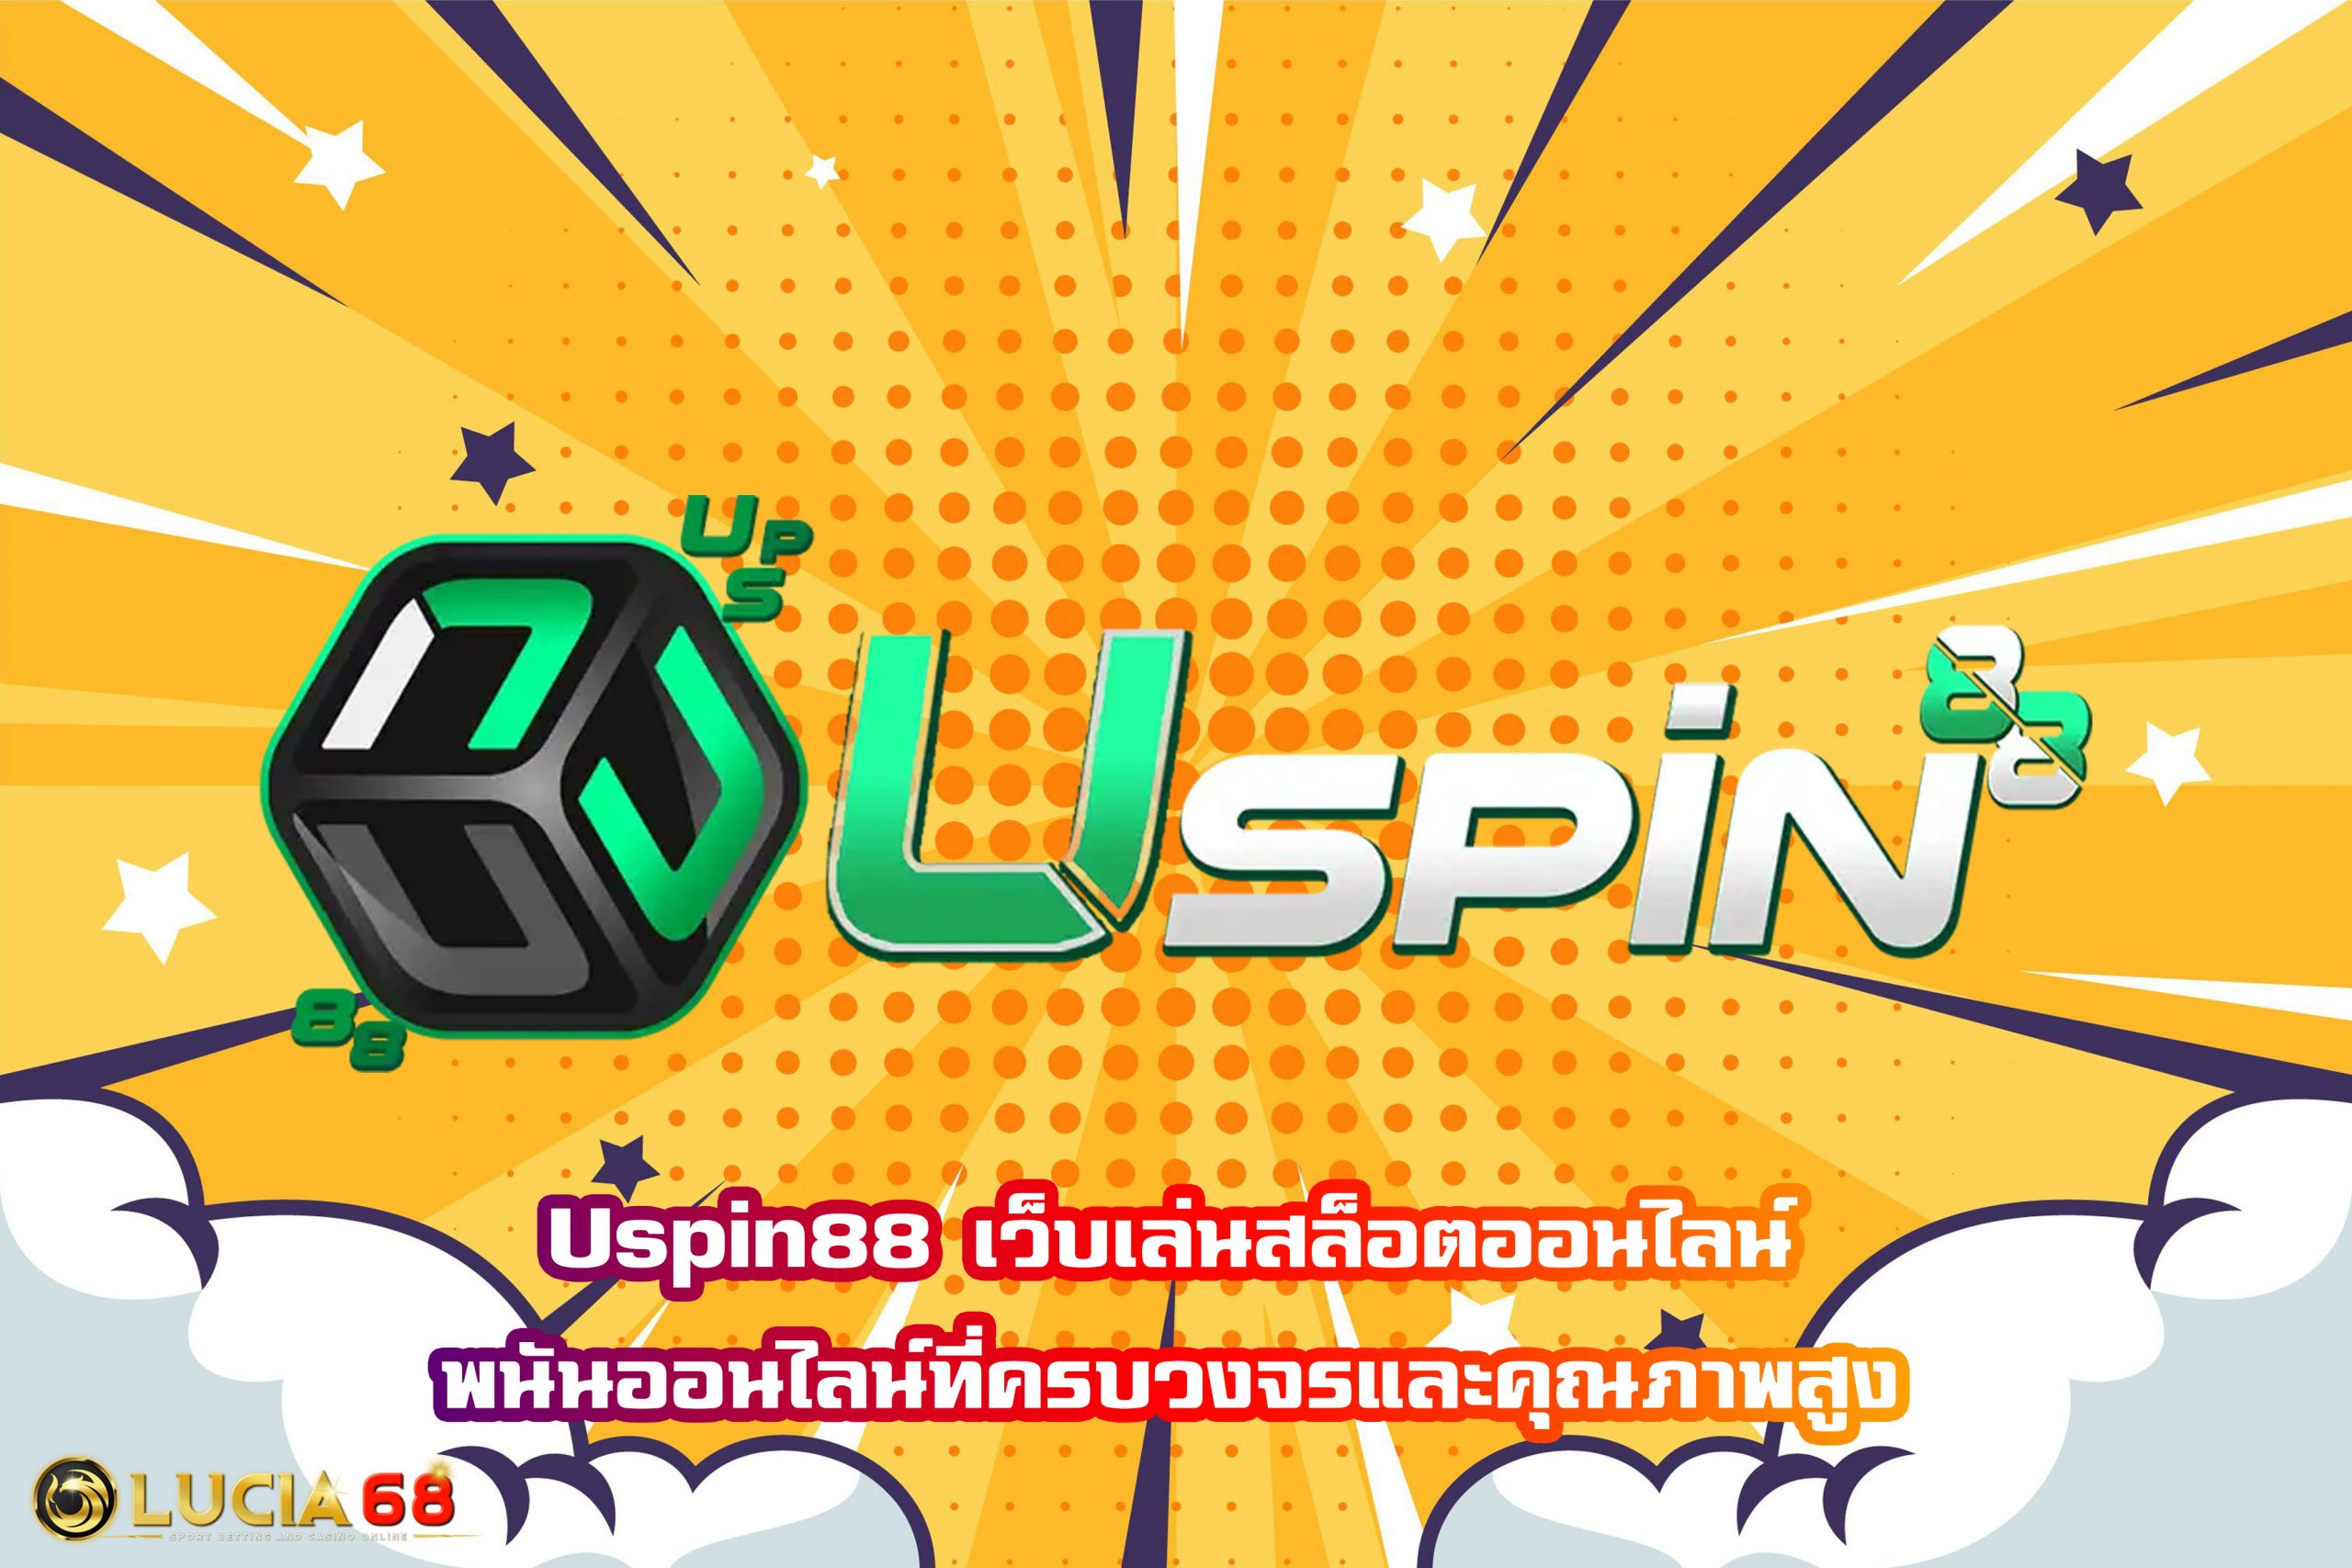 Uspin88 เว็บเล่นสล็อตออนไลน์ พนันออนไลน์ที่ครบวงจรและคุณภาพสูง